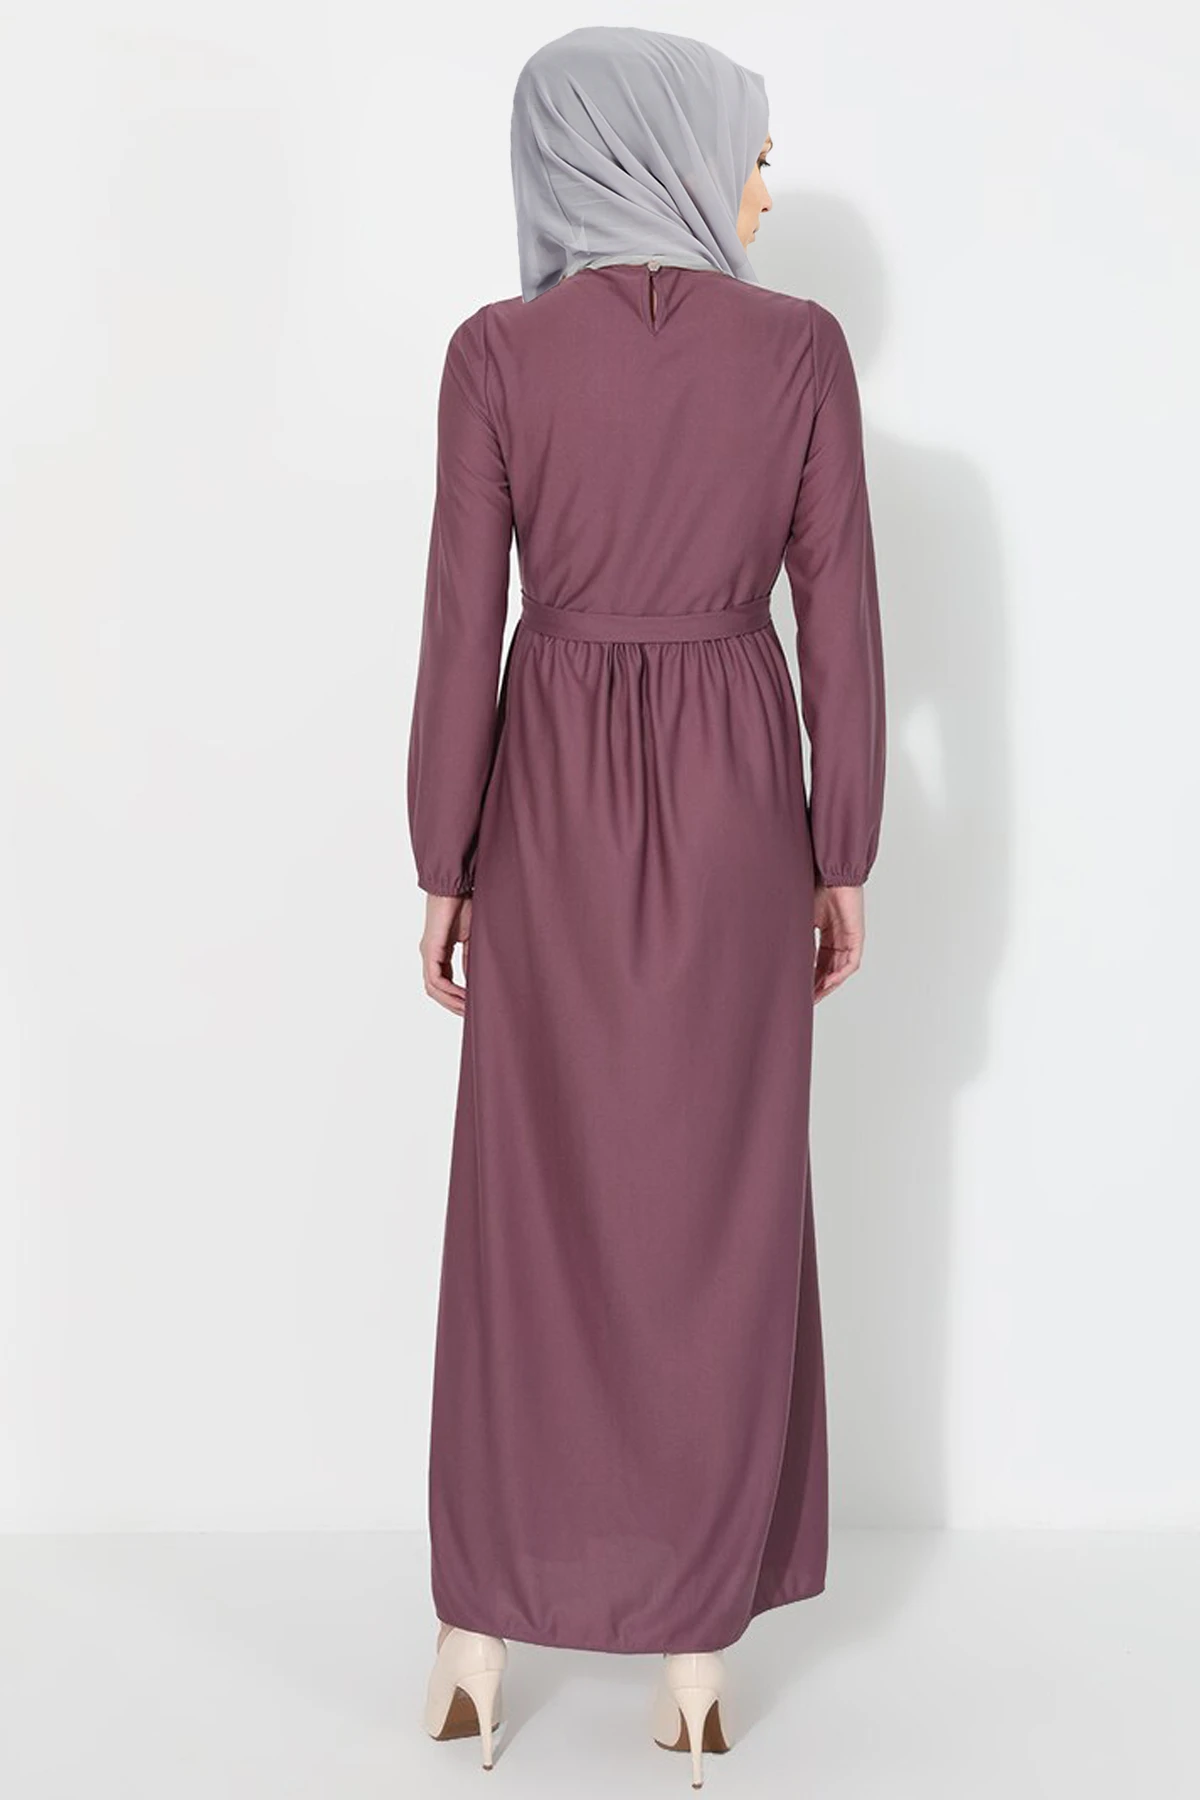 hijab islam vestuário dubai istambul istanbulstyles 2021